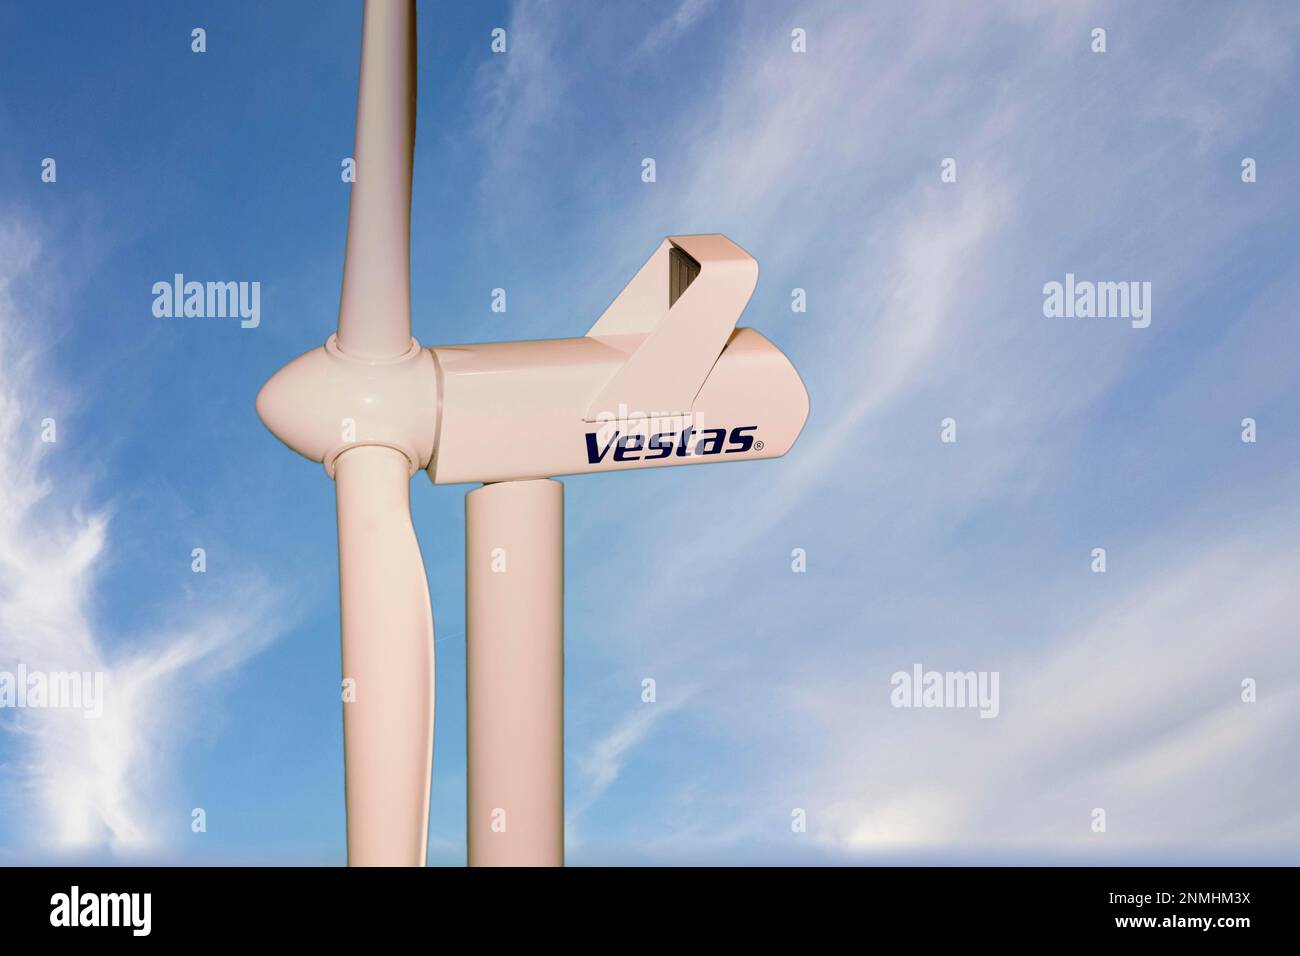 Logo von Vestas, dem Windturbinenunternehmen, im Hintergrund blauer Himmel mit Schleierwolken Stockfoto